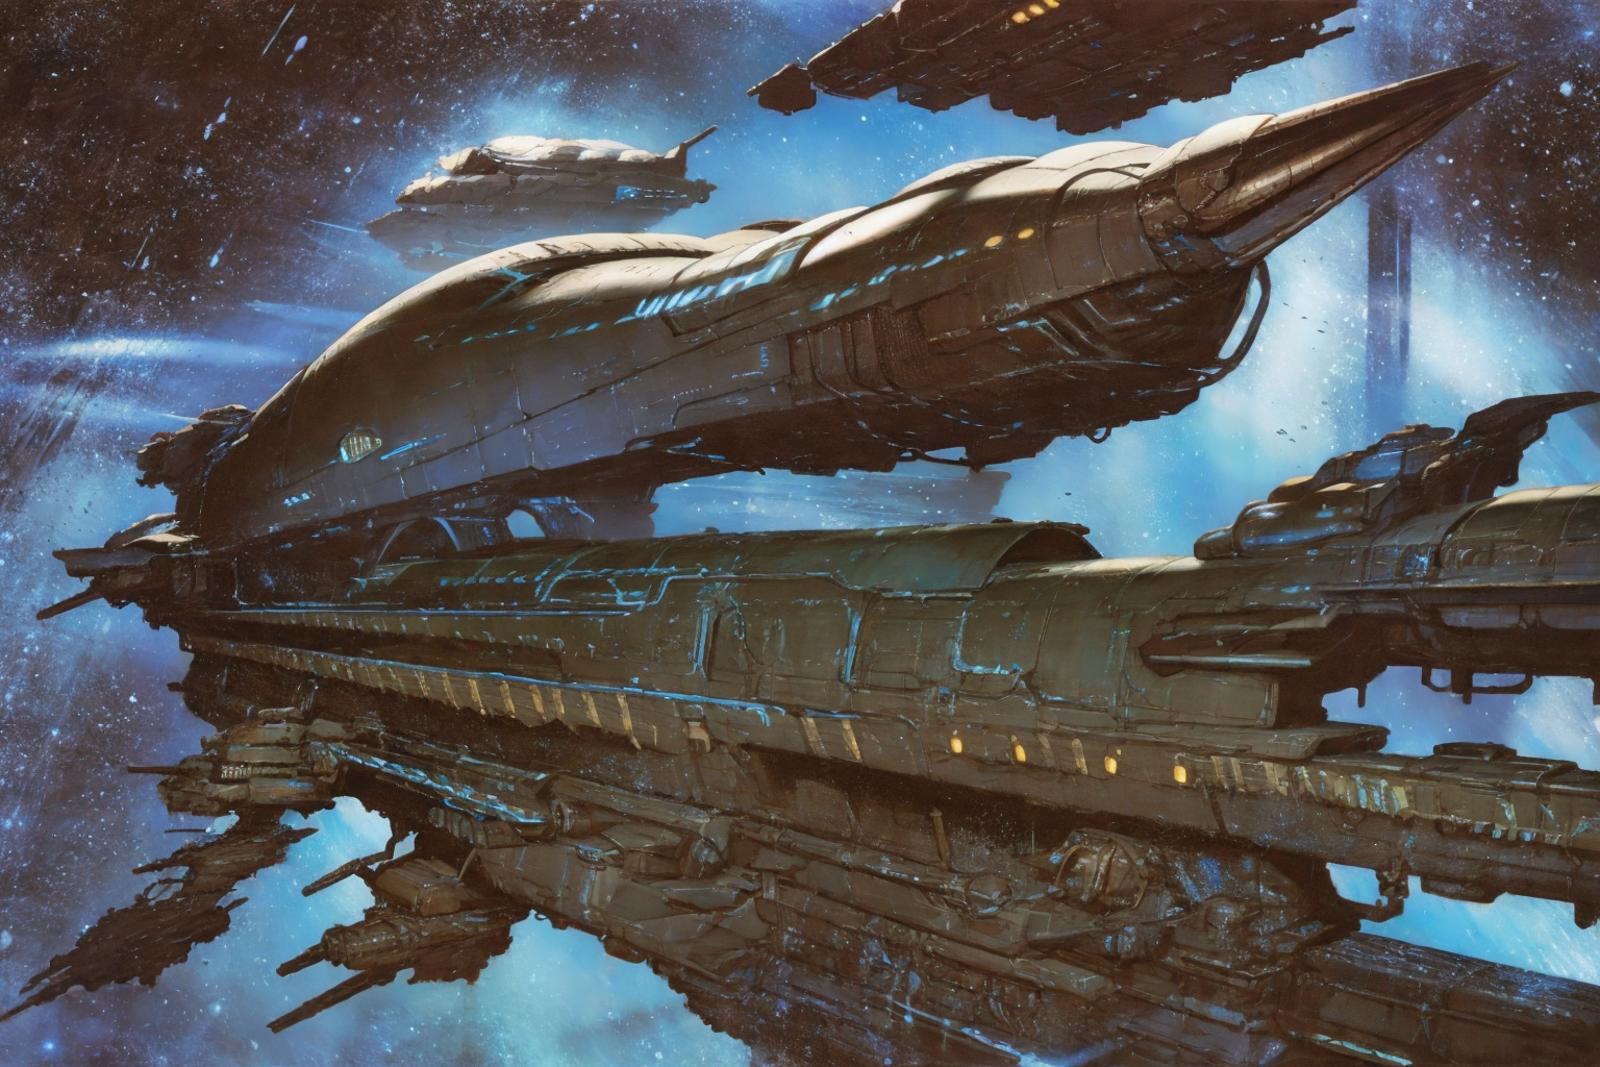 Retro Sci-Fi image by JxC